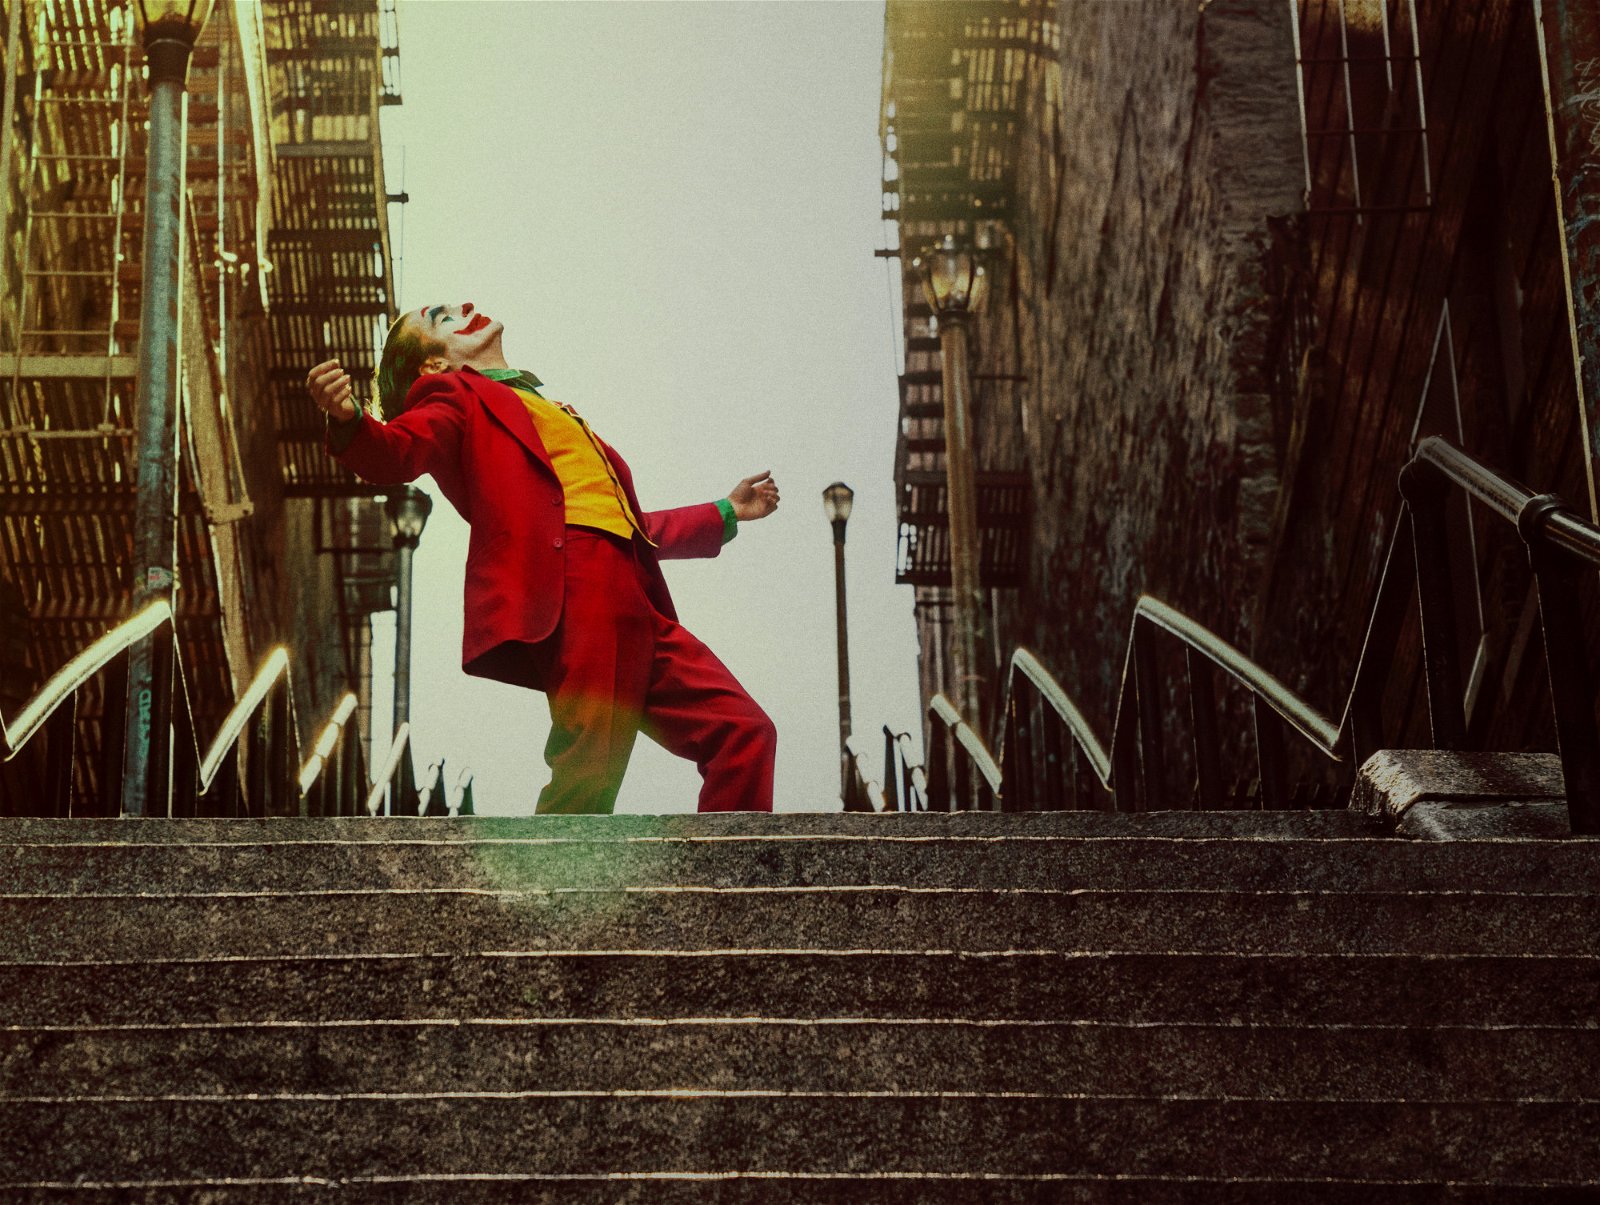 瓦昆菲尼克斯饰演的小丑成功成为年度话题之作。